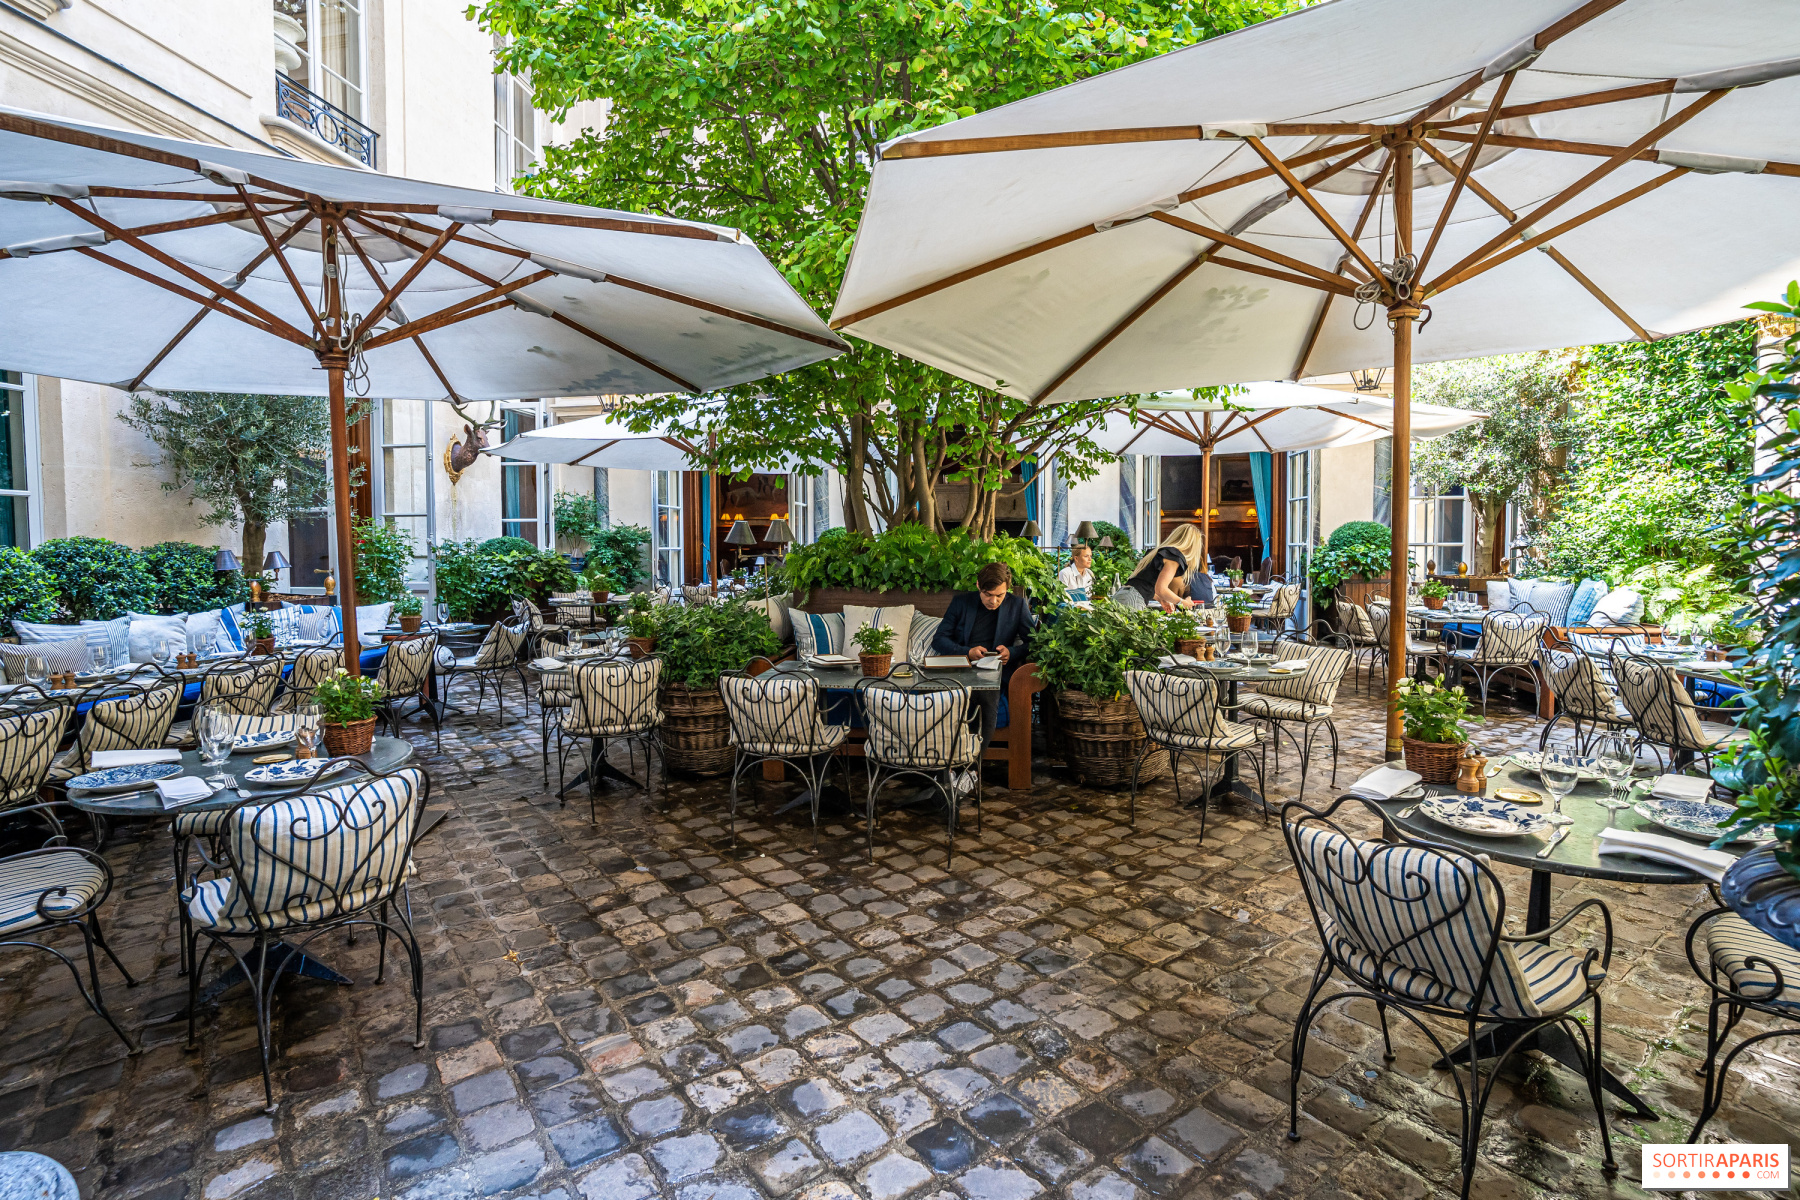 Ralph's, the Saint-Germain-des-Prés restaurant for American-style